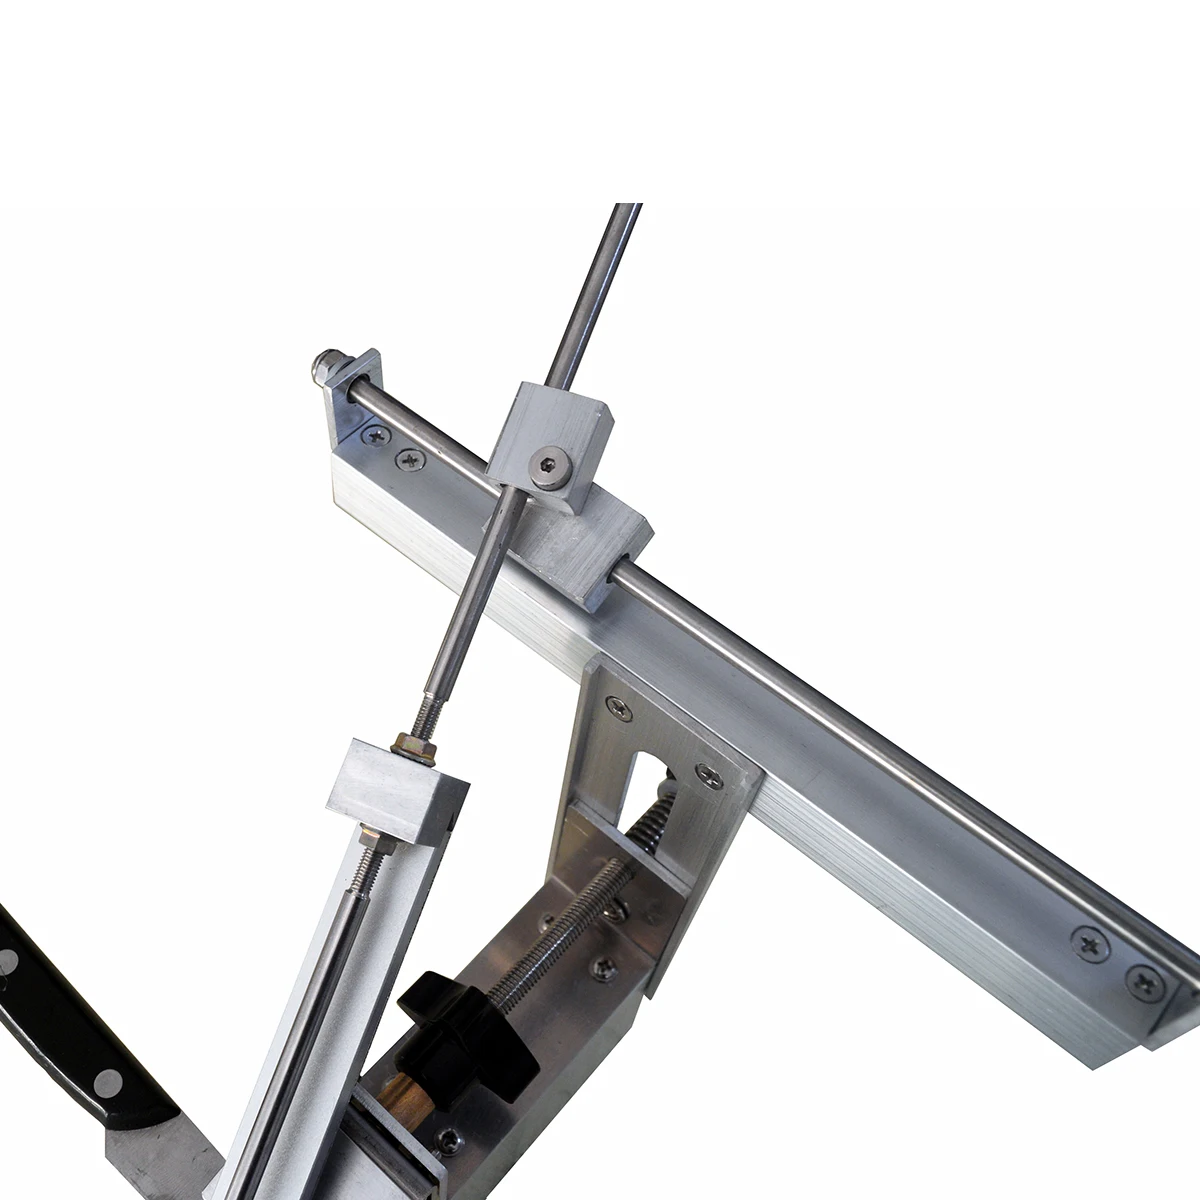 KME II точилка для ножей Профессиональная шлифовальная машина для заточки профессиональных ножей Система шлифовки ножей Apex edge точилка для ножей 1 бриллиант